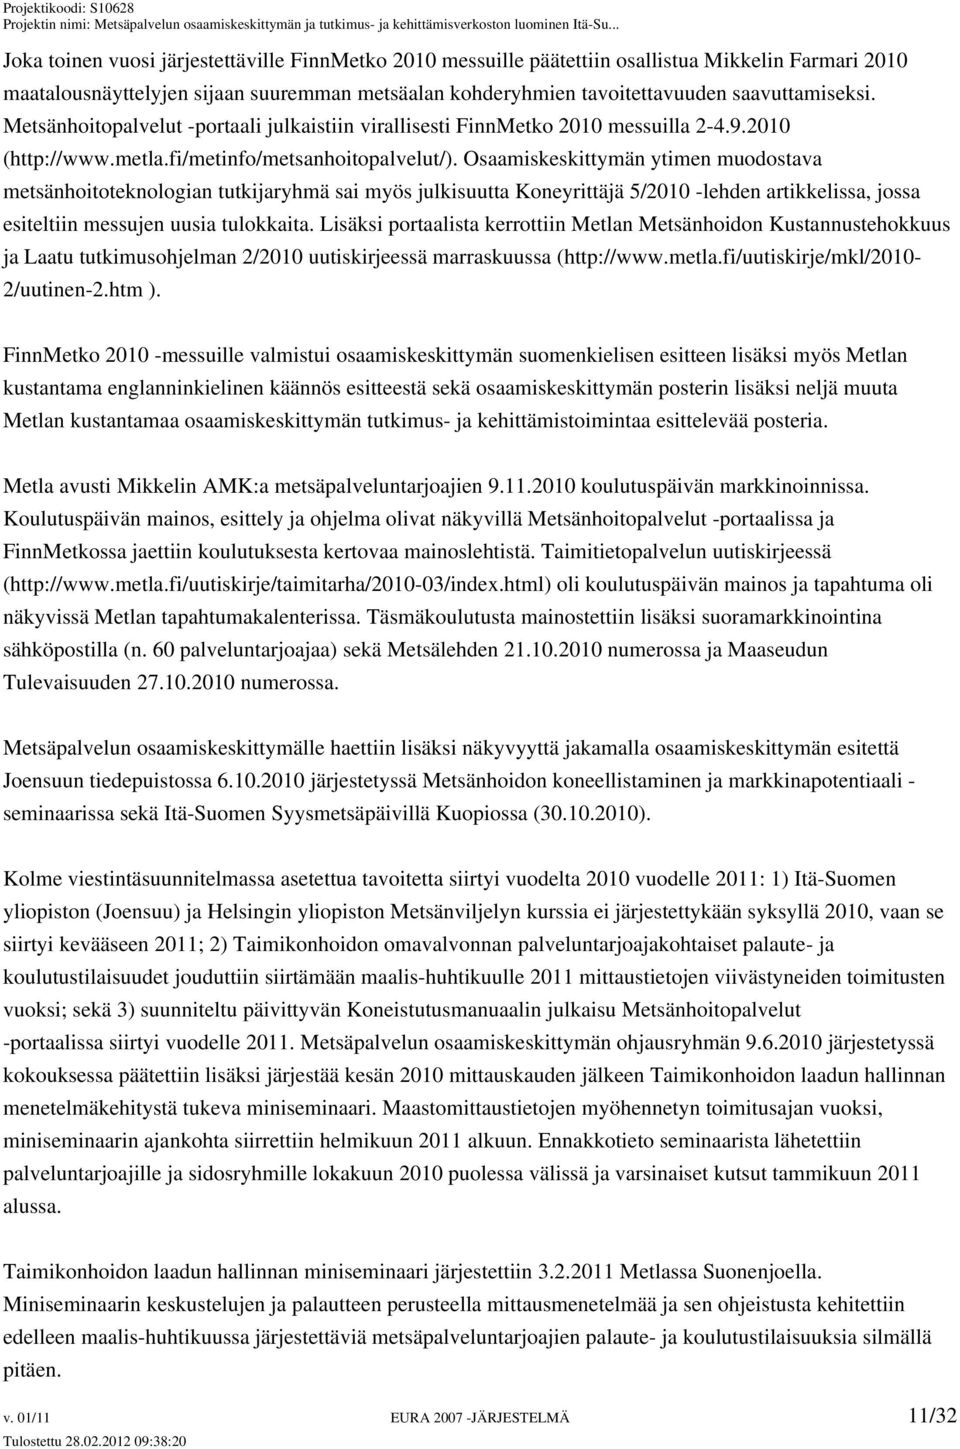 Osaamiskeskittymän ytimen muodostava metsänhoitoteknologian tutkijaryhmä sai myös julkisuutta Koneyrittäjä 5/2010 -lehden artikkelissa, jossa esiteltiin messujen uusia tulokkaita.